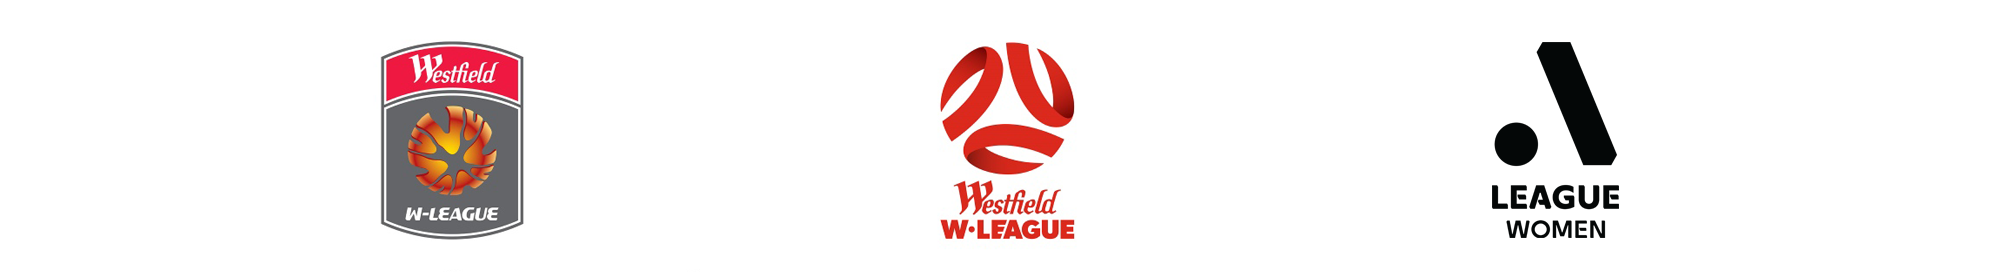 A-League Women Logos